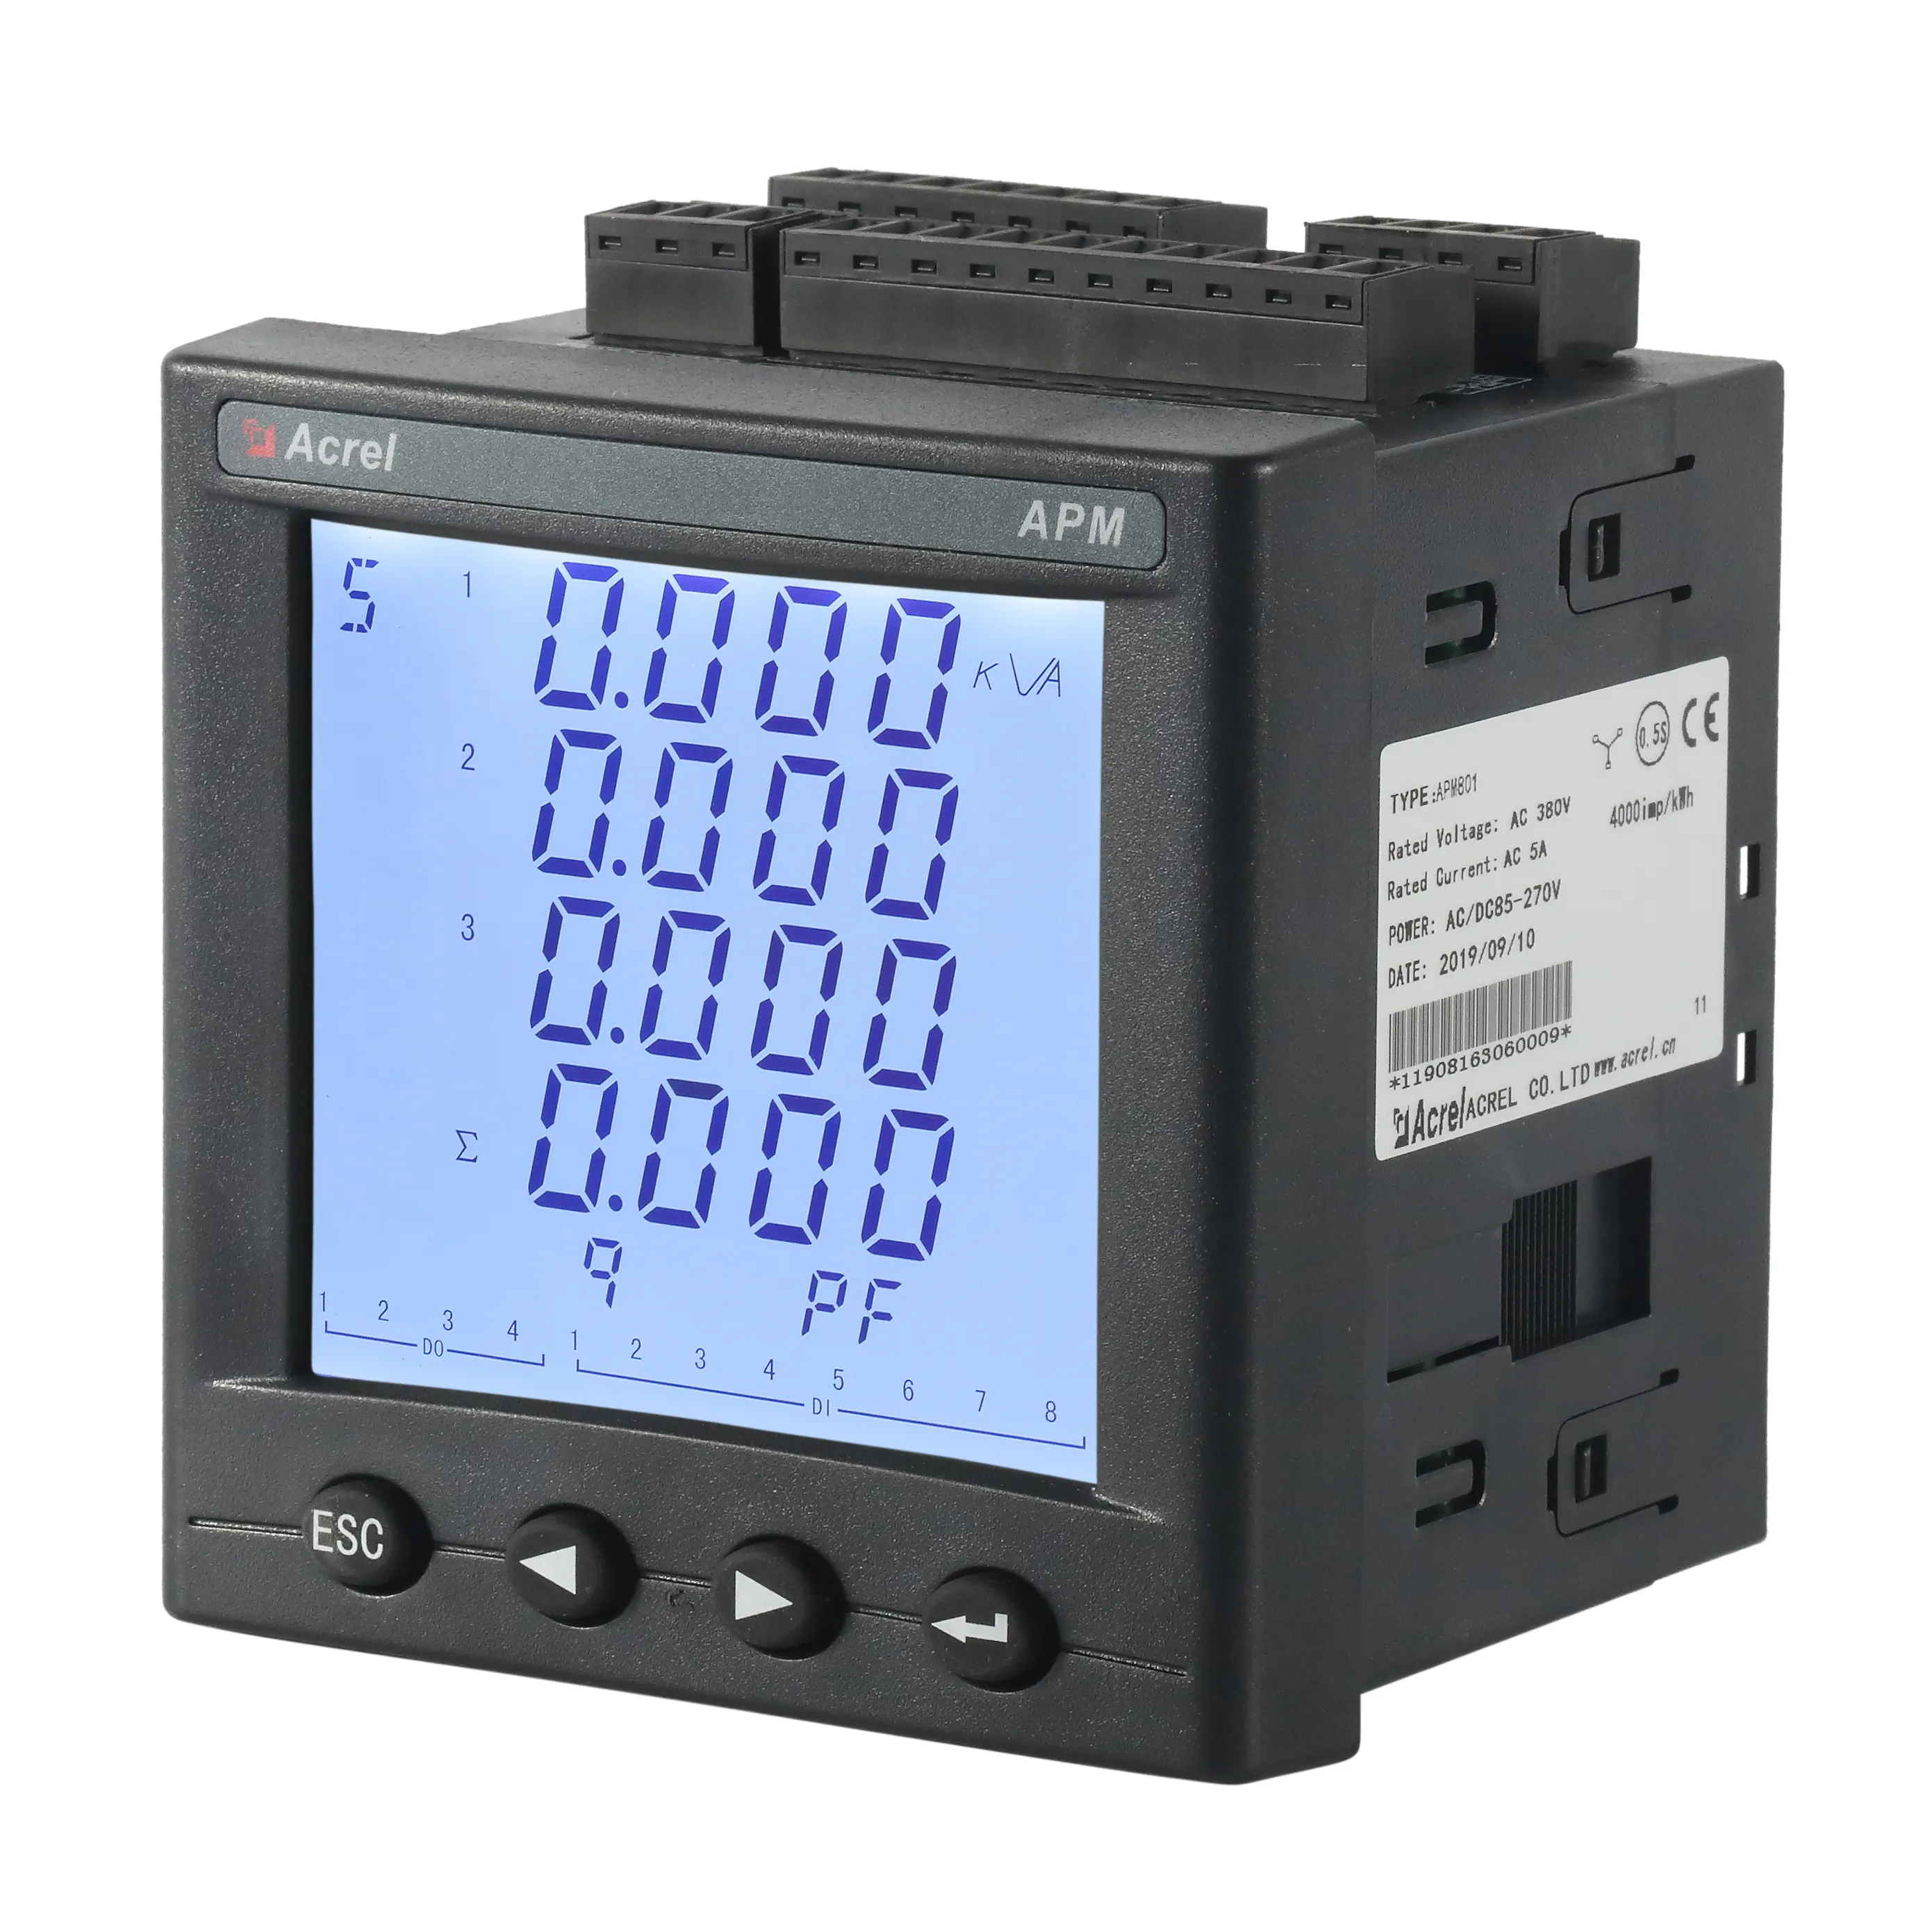 Acrel APM800 medidor de energía digital trifásico de alta precisión con registro Modbus RTU TCP y función de almacenamiento de tarjeta SD